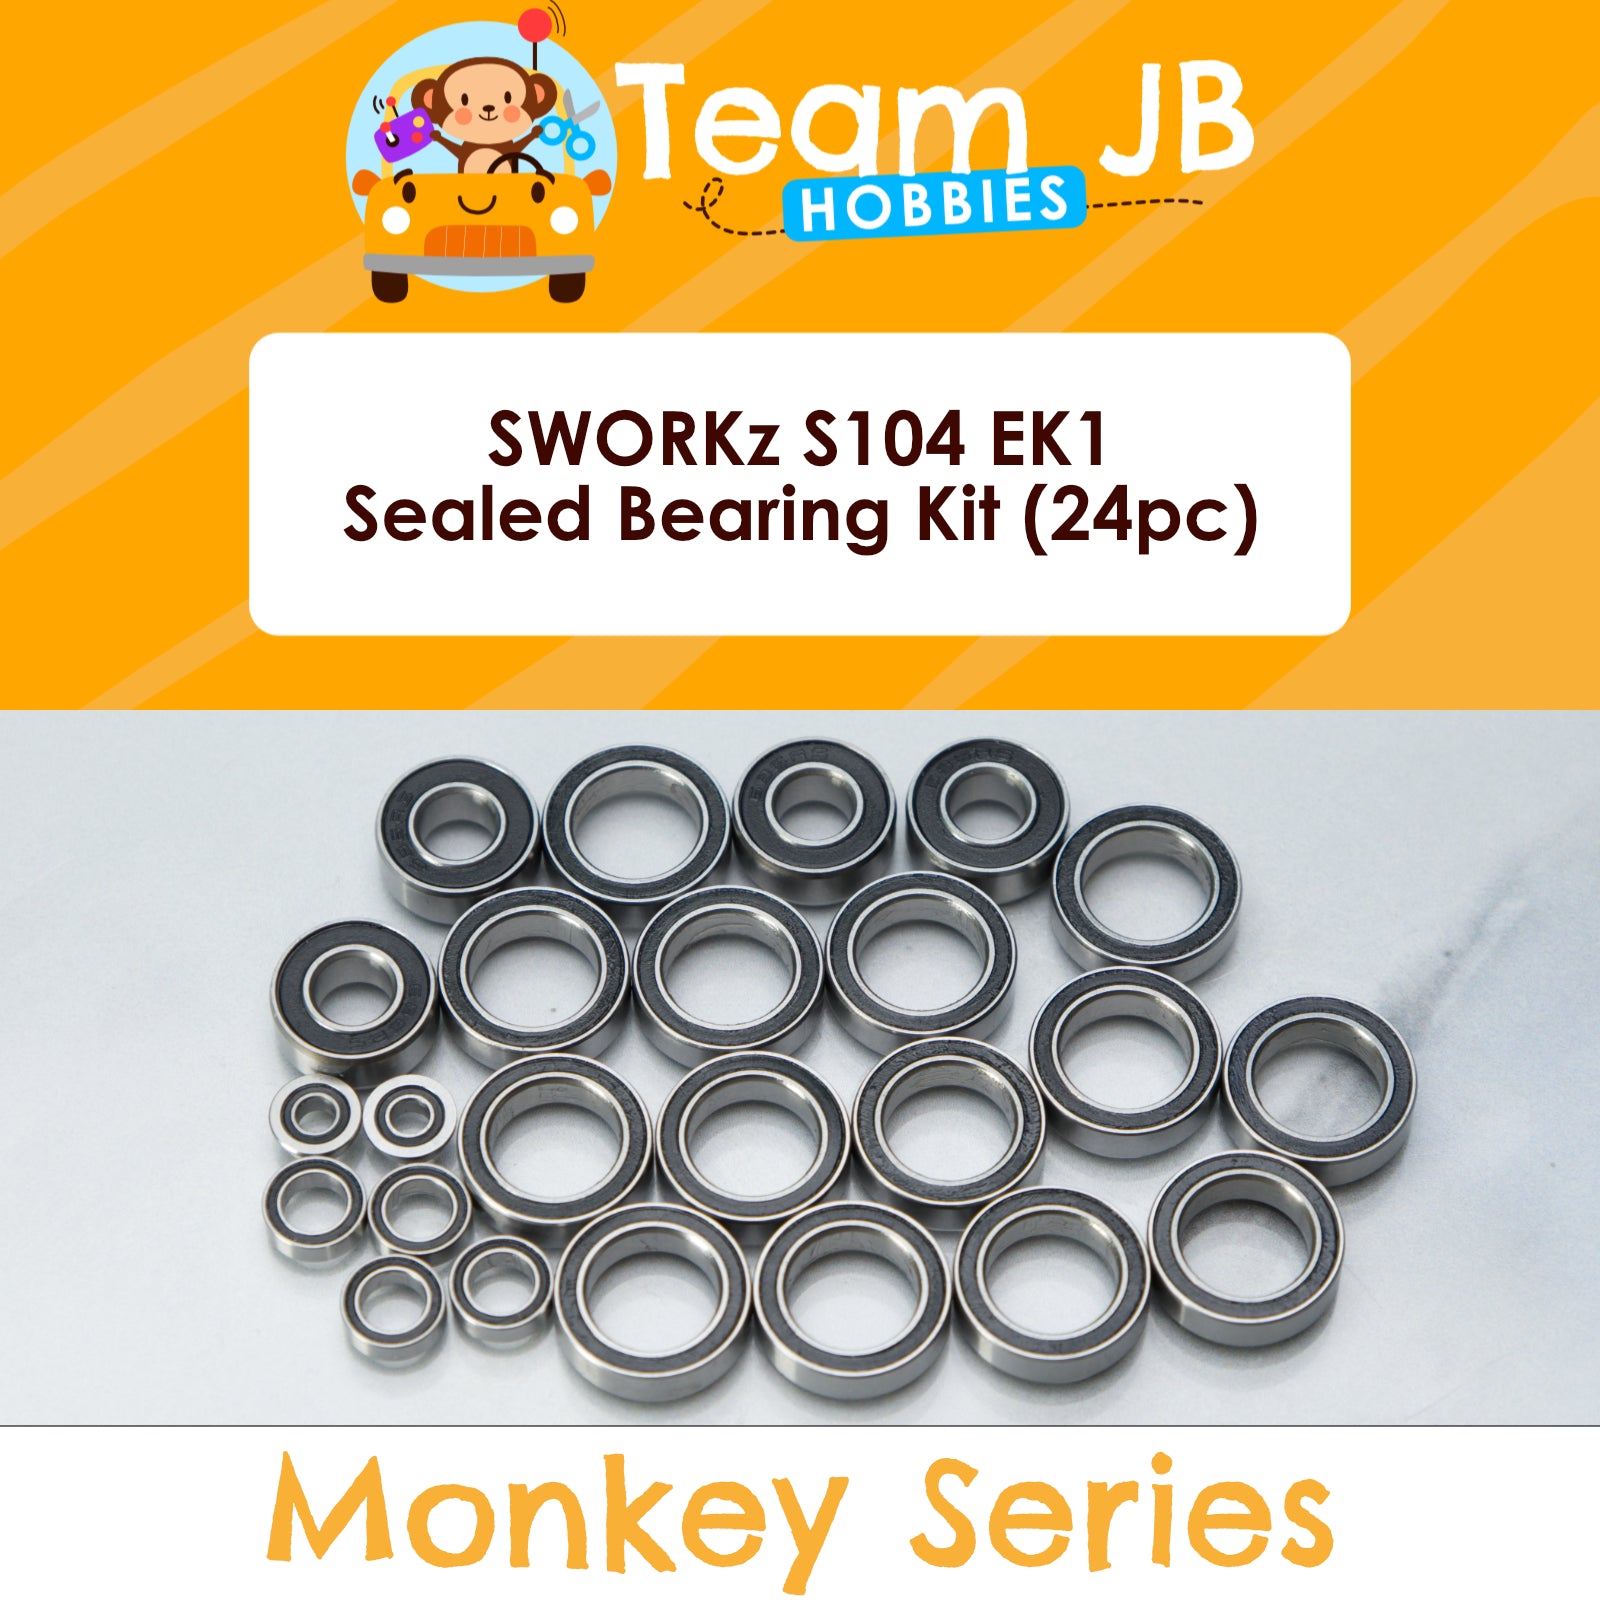 SWORKz S104 EK1 - Sealed Bearing Kit